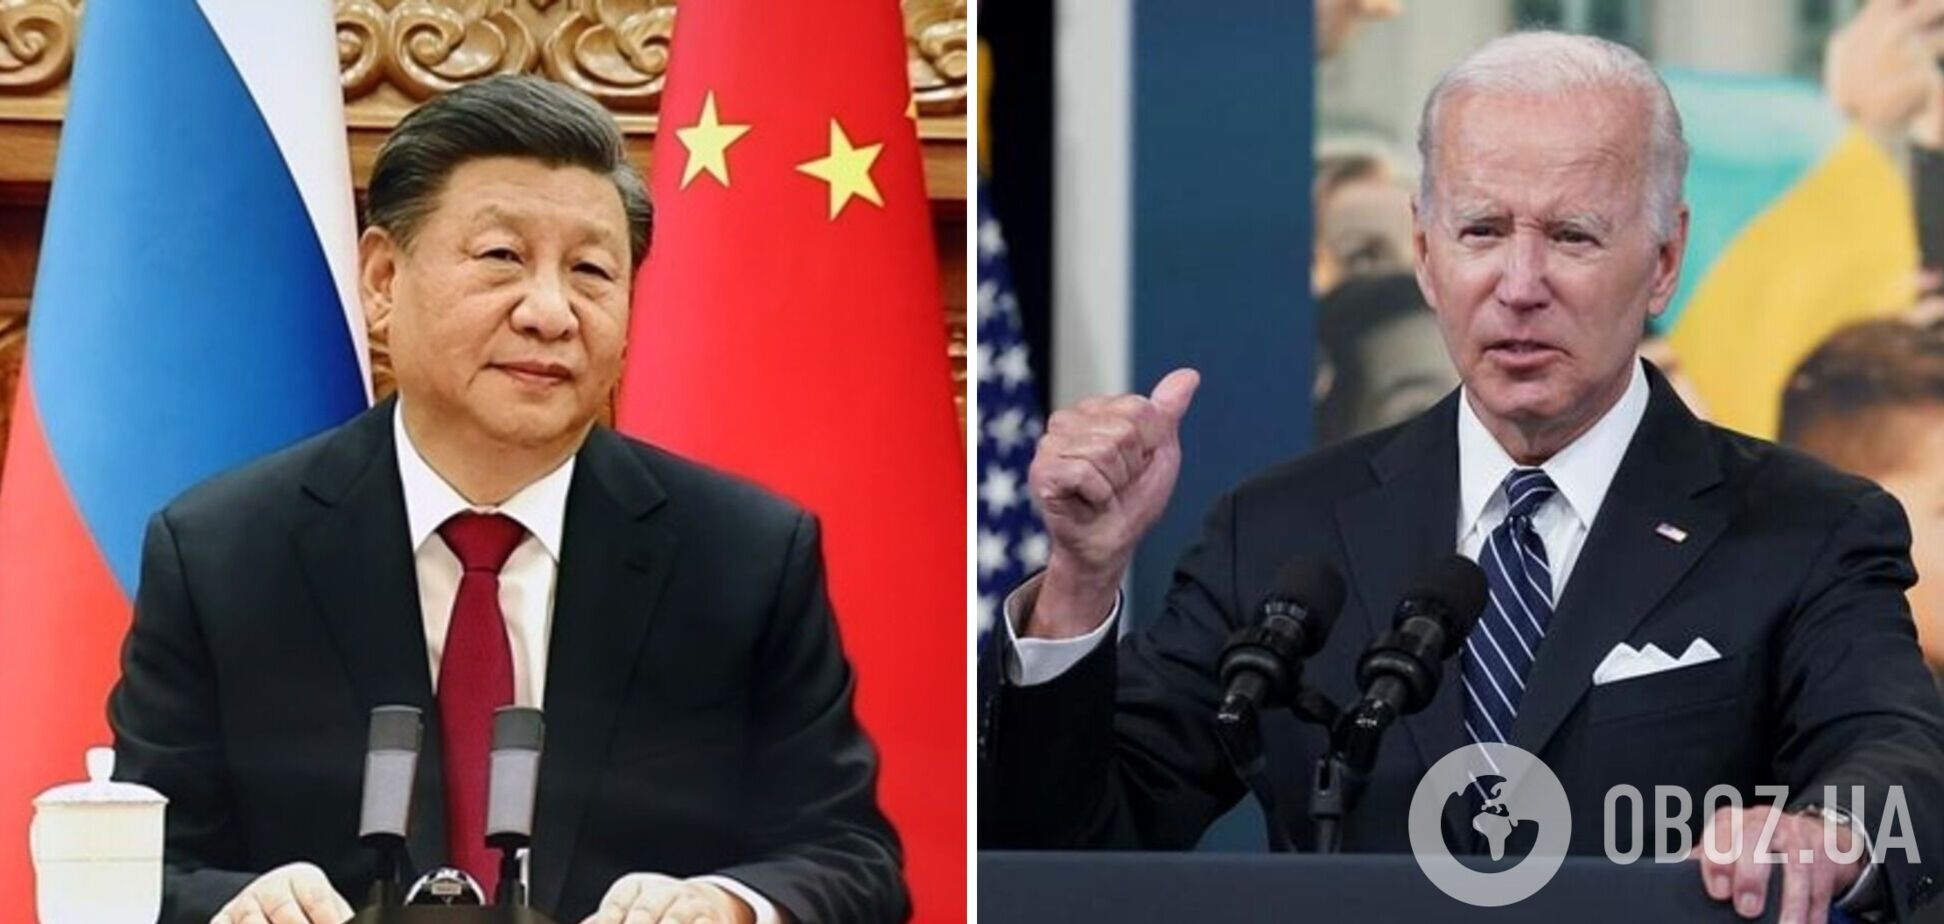 Байден лично предостерег Си Цзиньпина от поддержки России: детали разговора